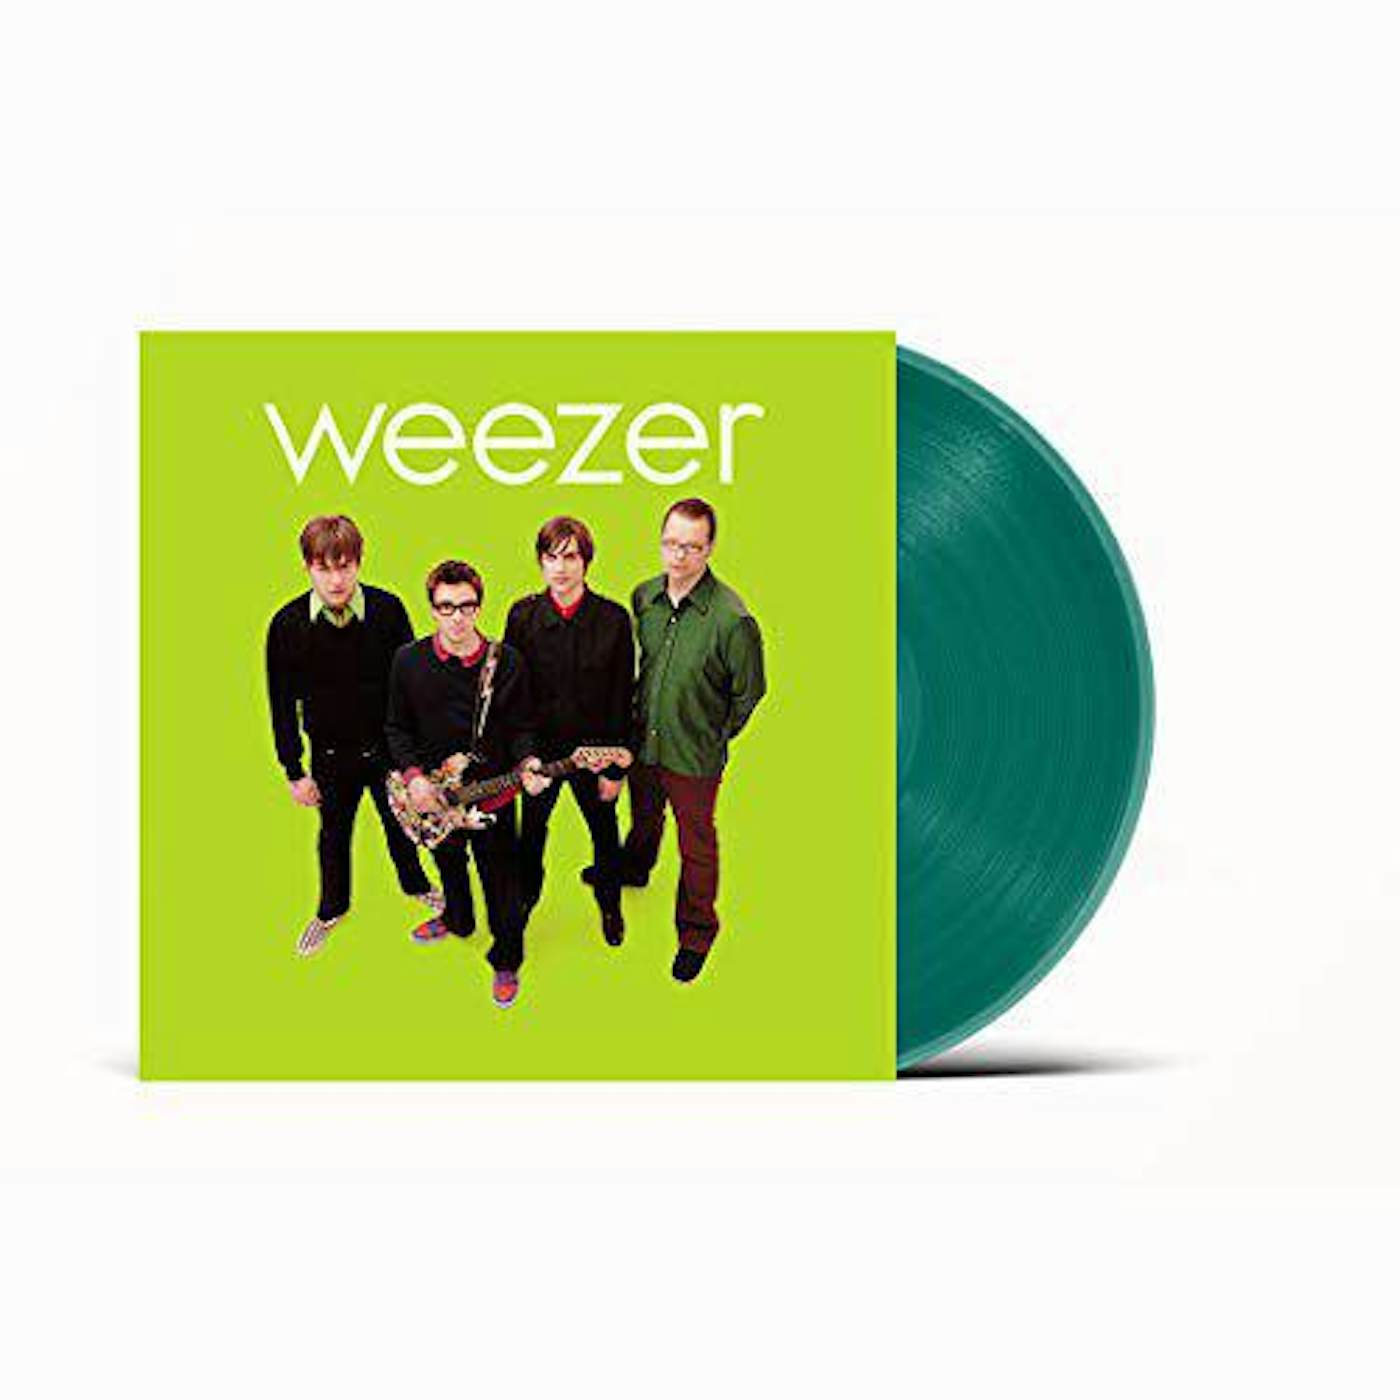 Weezer (Green Album) Vinyl Record